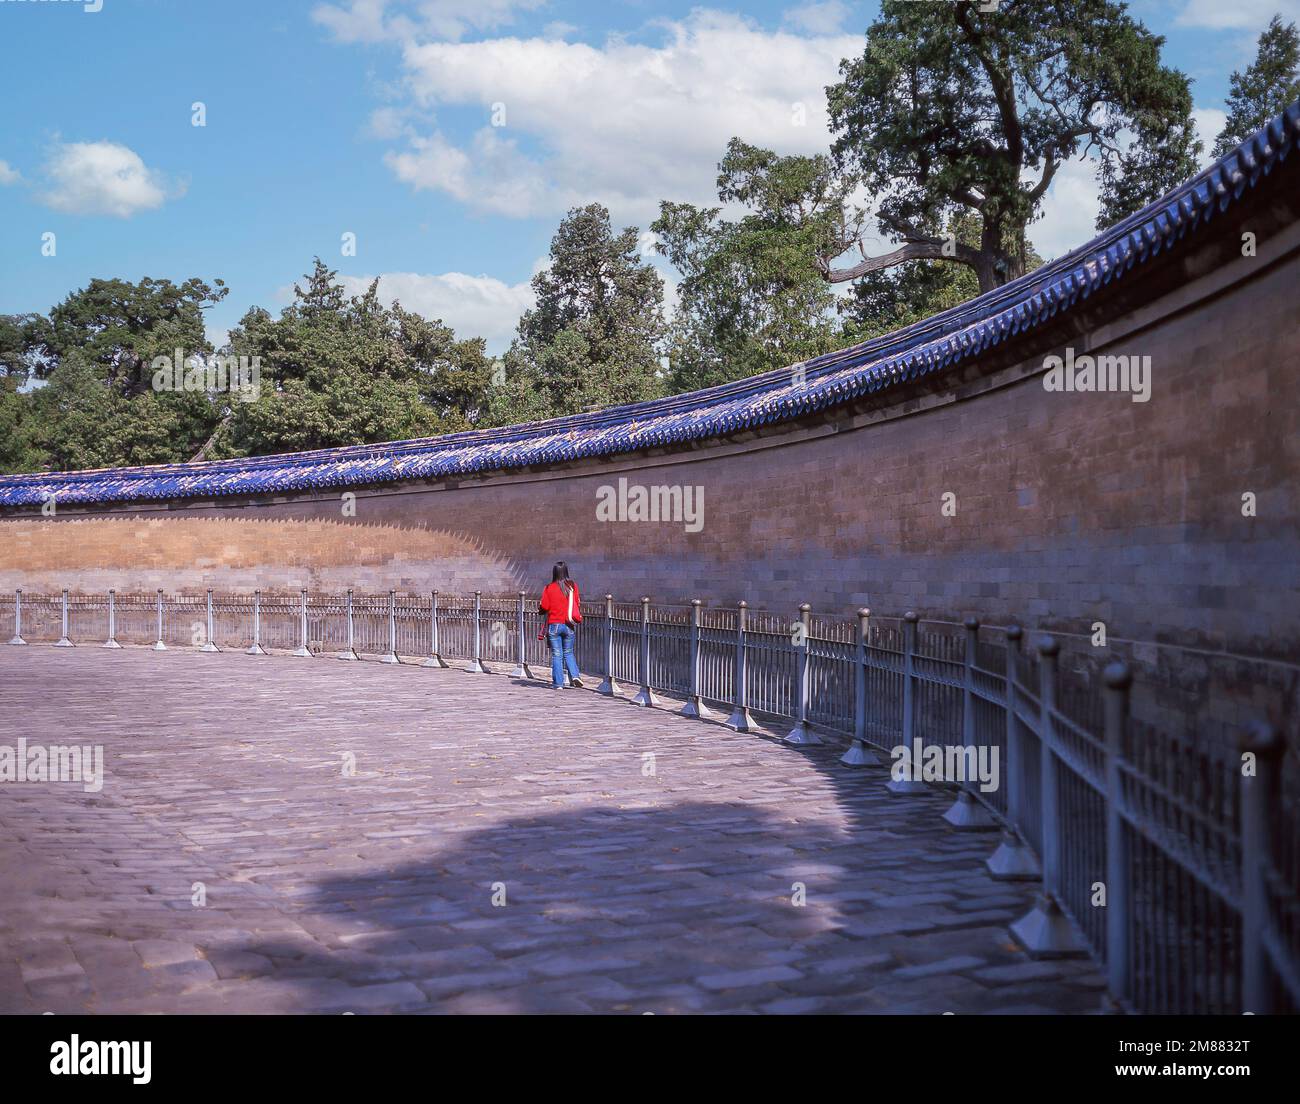 La pared del eco en la bóveda imperial del cielo, templo del cielo, Dongcheng, Beijing, Beijing y noreste, La República Popular China Foto de stock